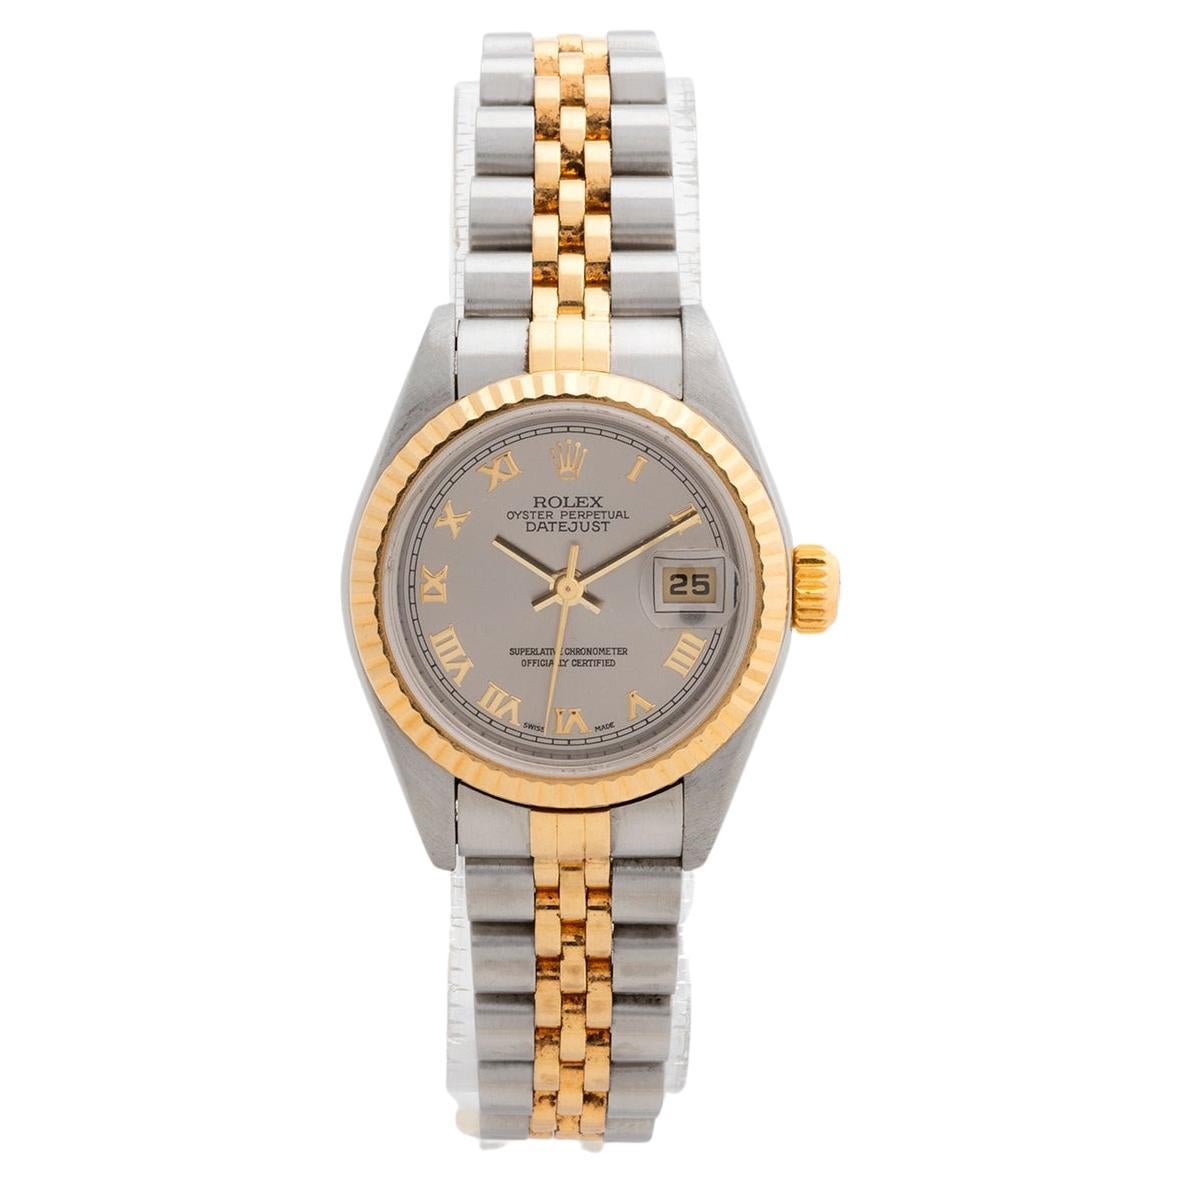 Montre-bracelet Rolex Lady Datejust pour femme, cadran gris rhodium. Ref 79173.